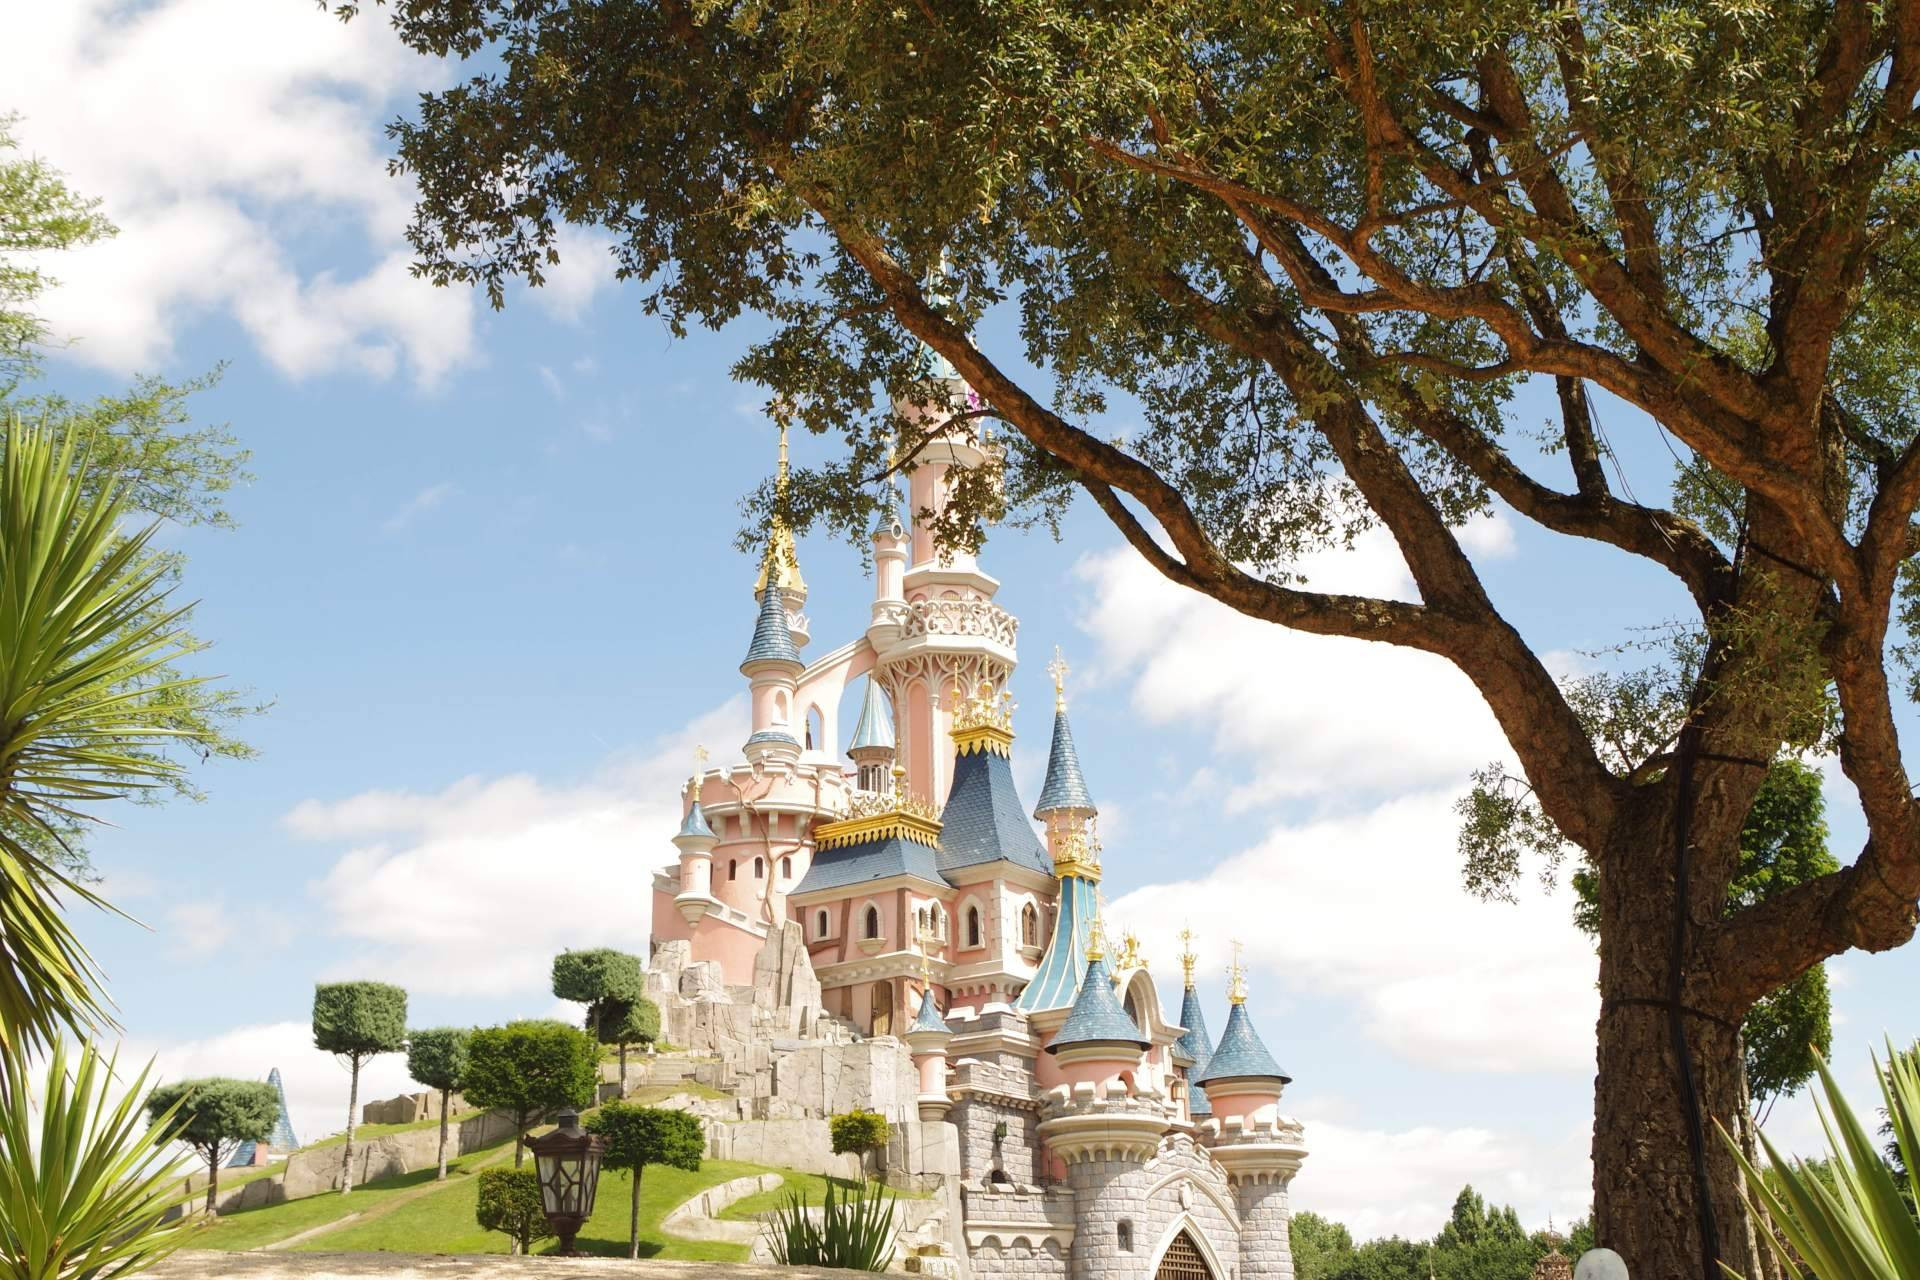  Hacer un viaje a Disneyland París de forma segura gracias a Coverontrip 